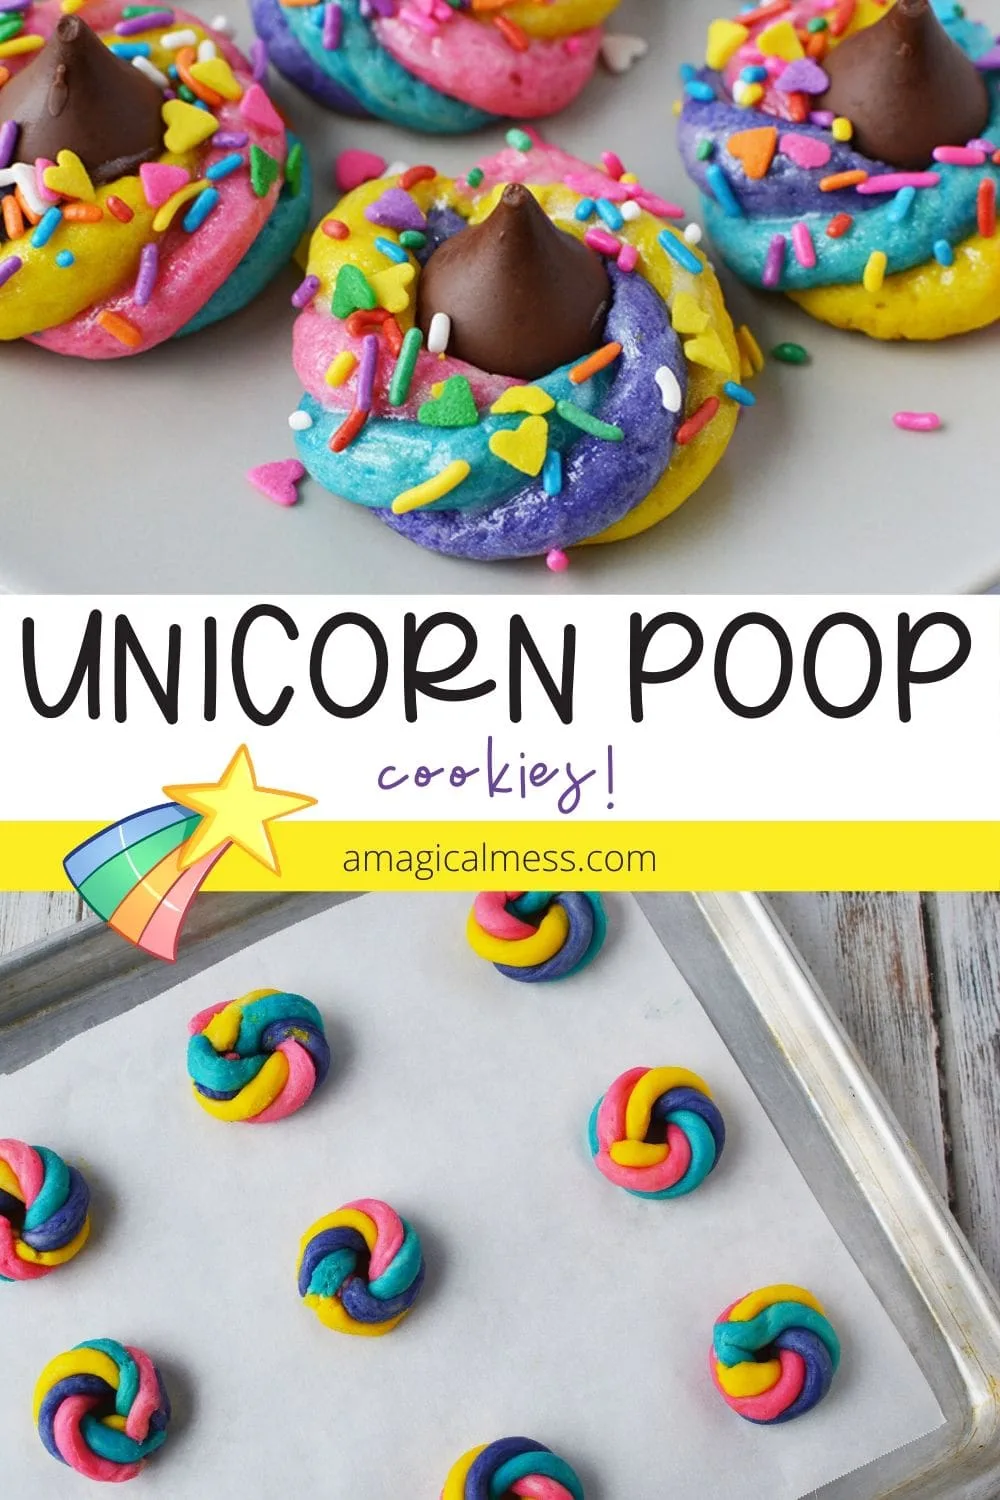 Unicorn poop cookies